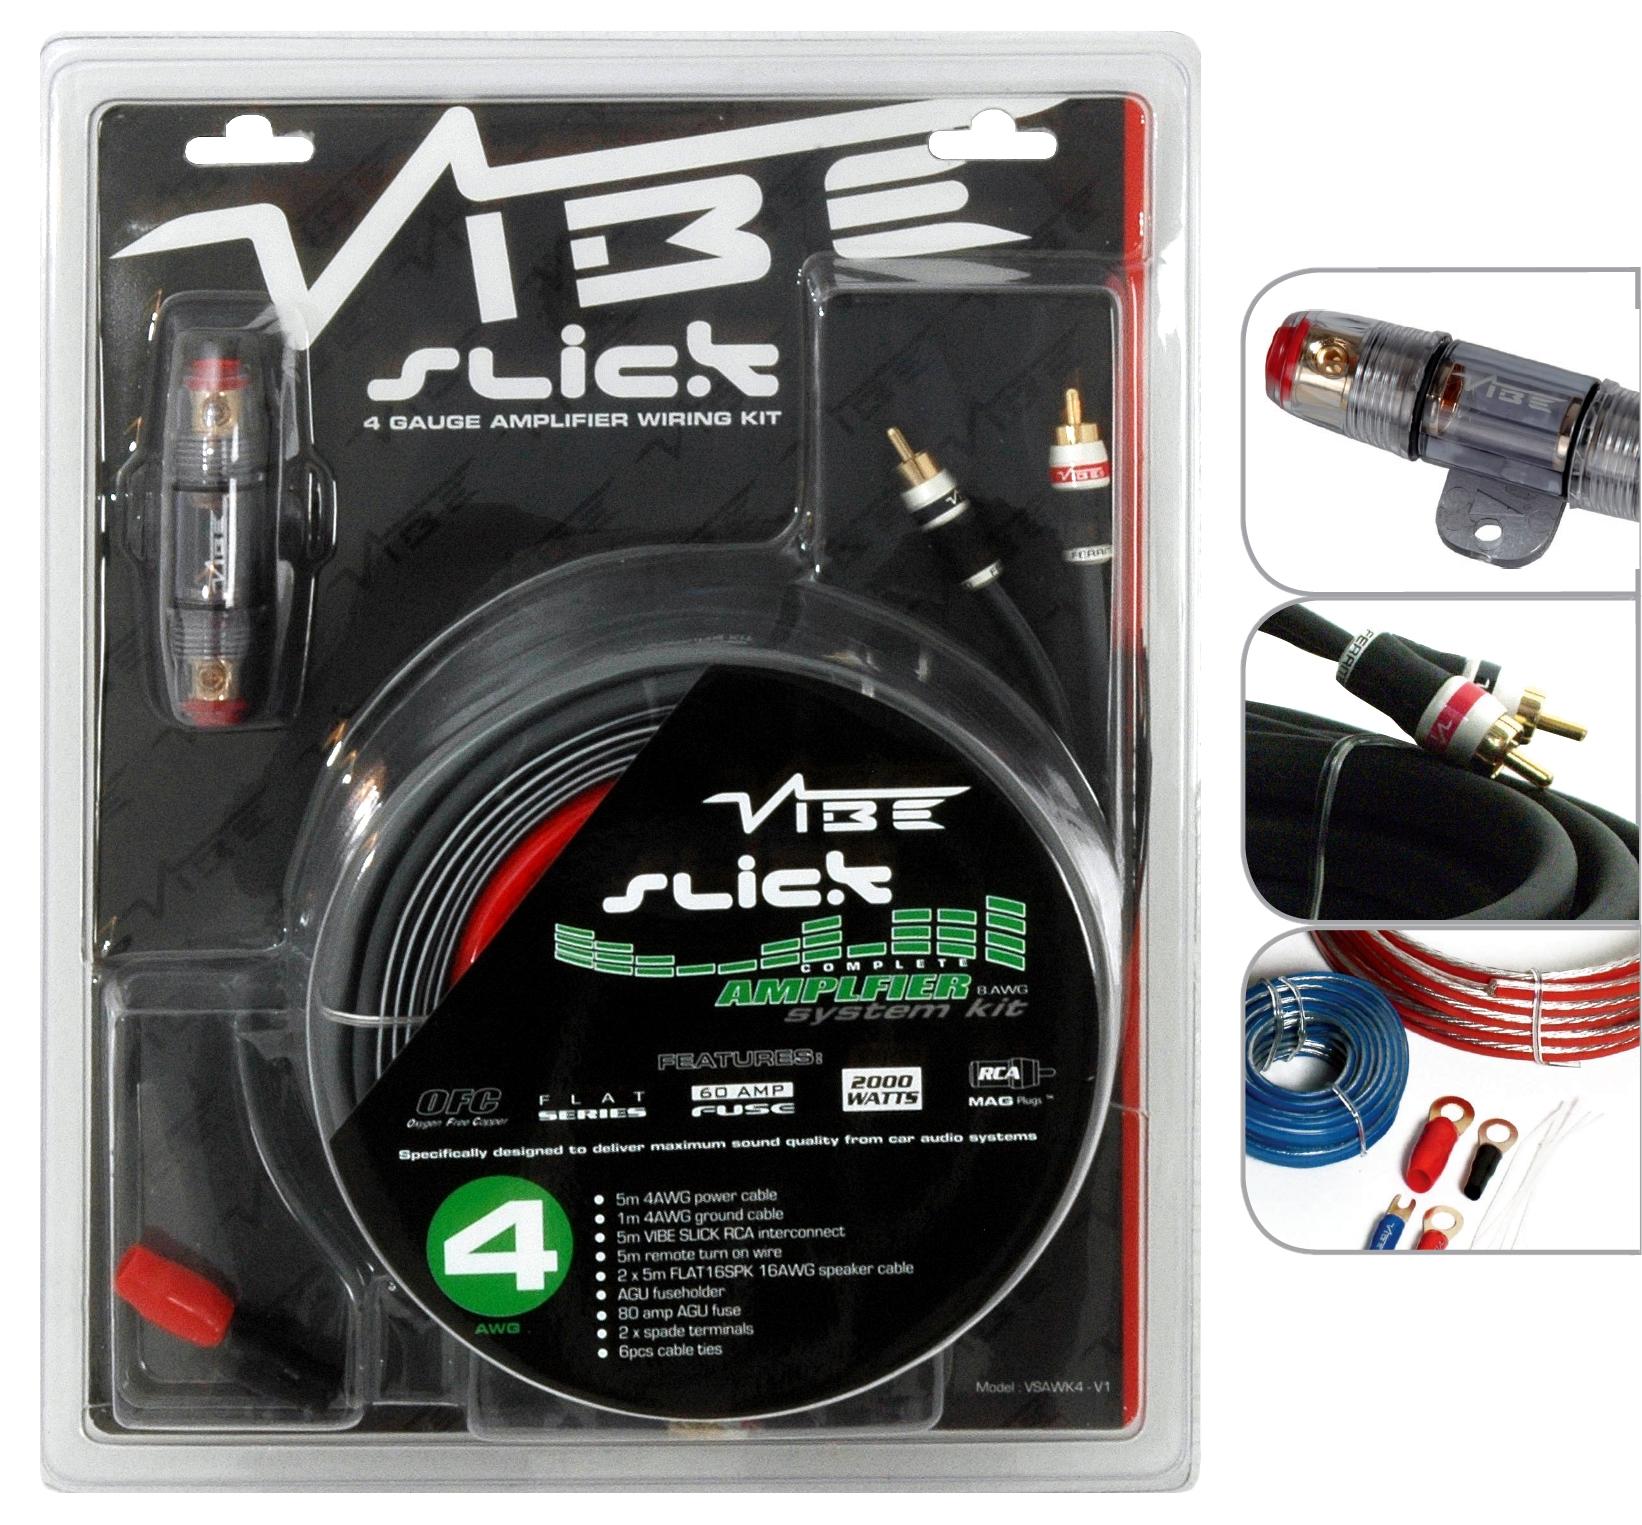 Vibe Slick 4 Gauge Amplifier Wiring Kit